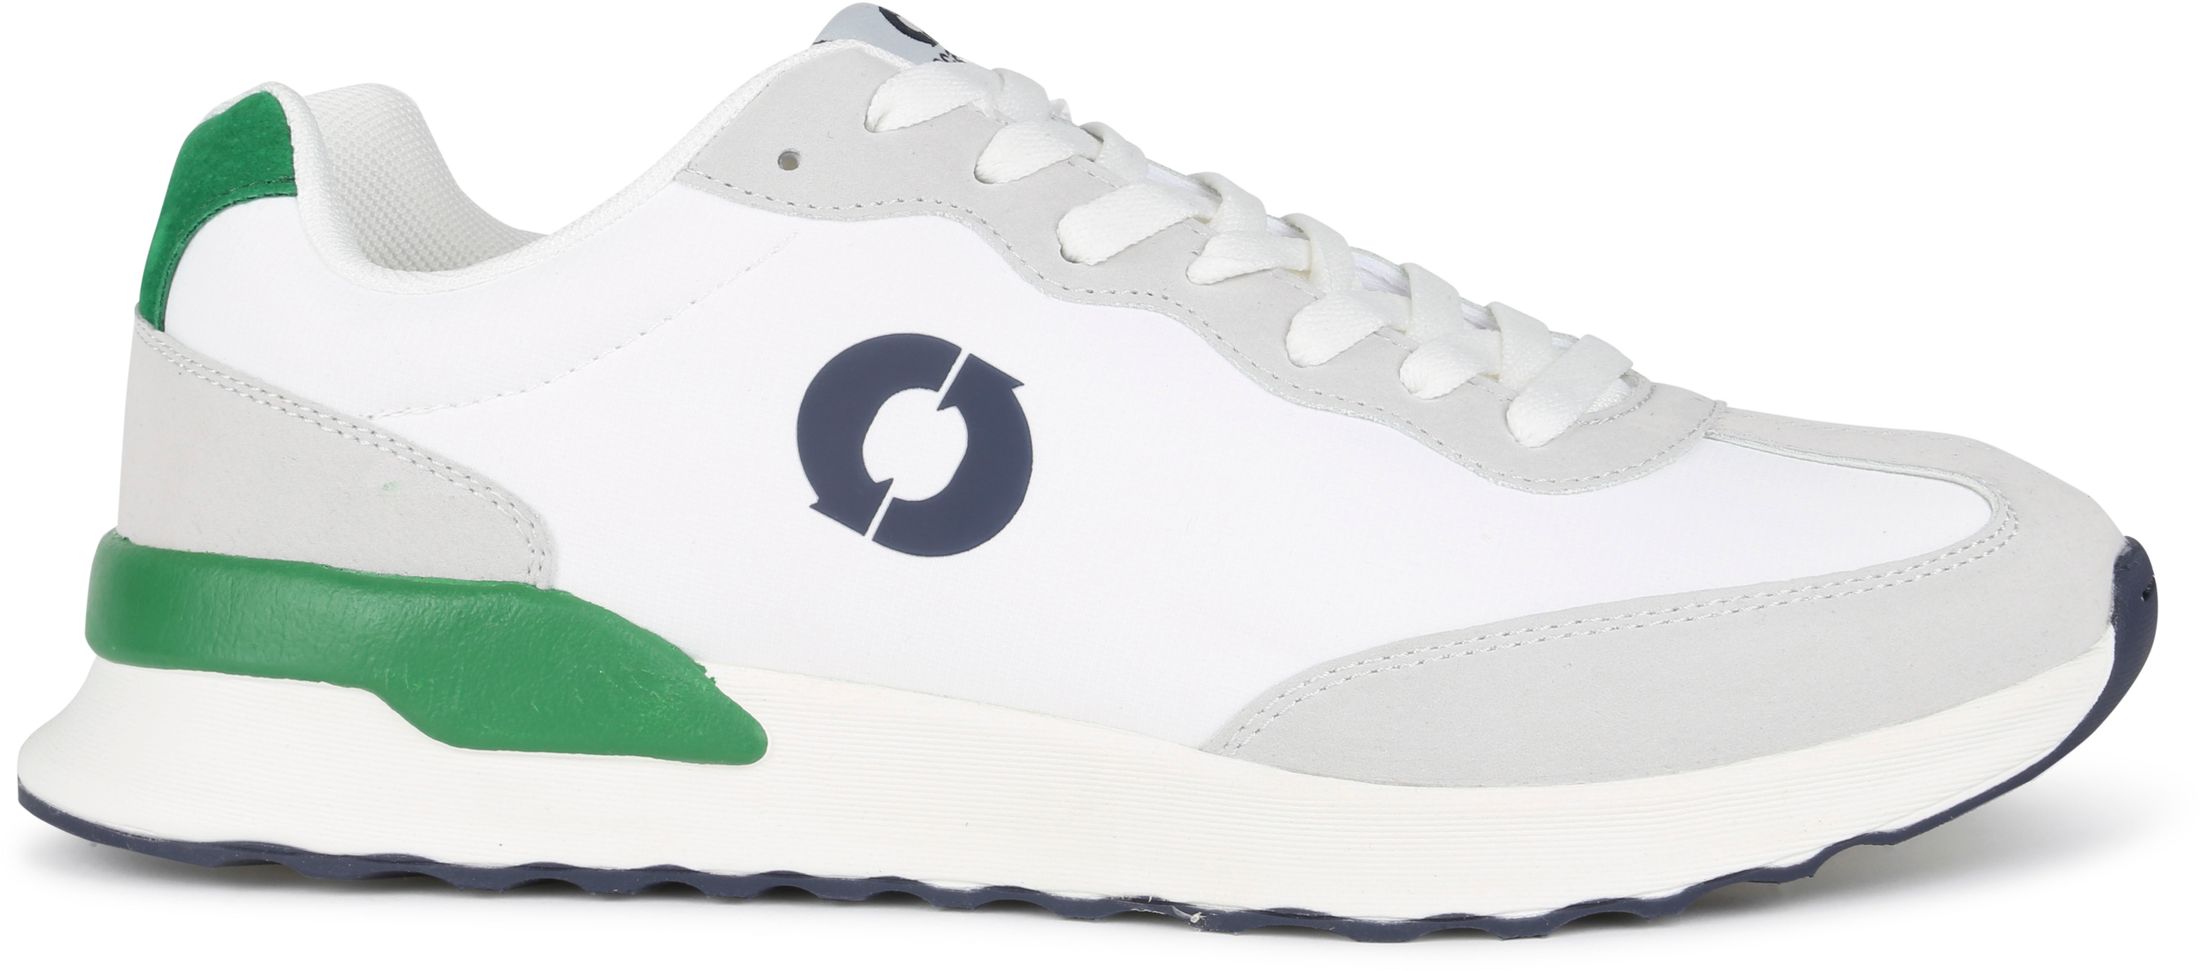 Ecoalf Sneaker Prinalf Dark Blue Multicolour Green White size 10.5